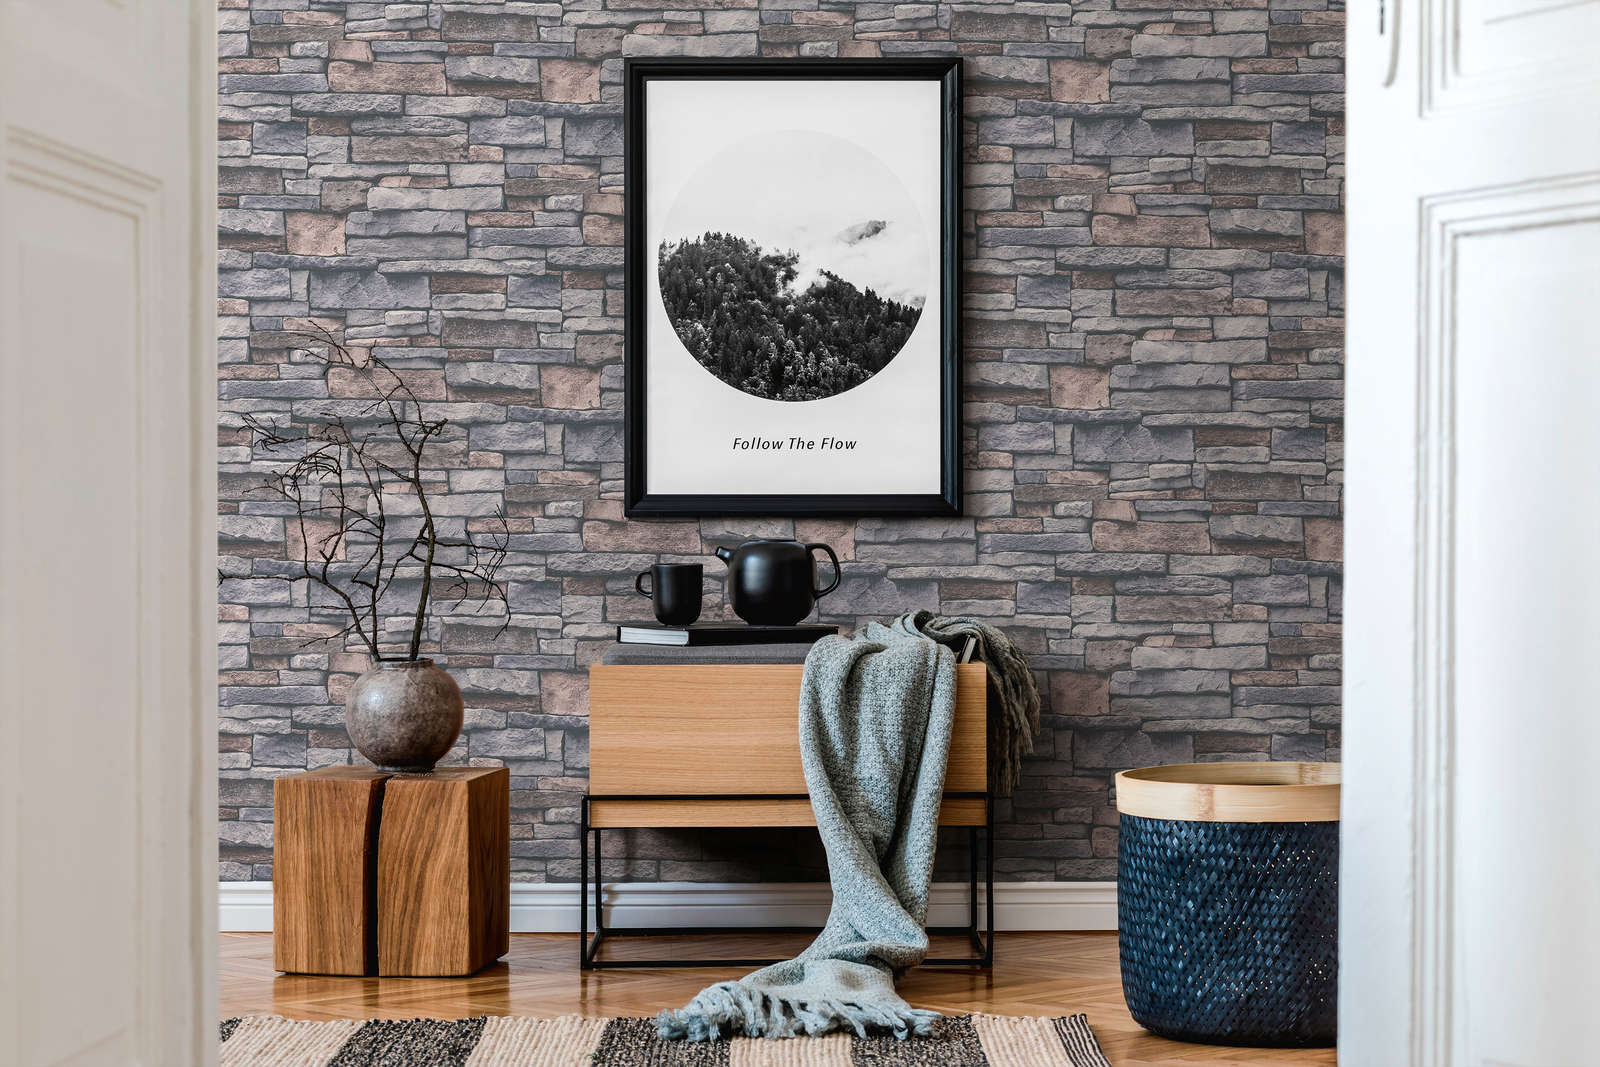             Vliestapete in Steinoptik mit Natursteinmauer – Grau, Beige, Braun
        